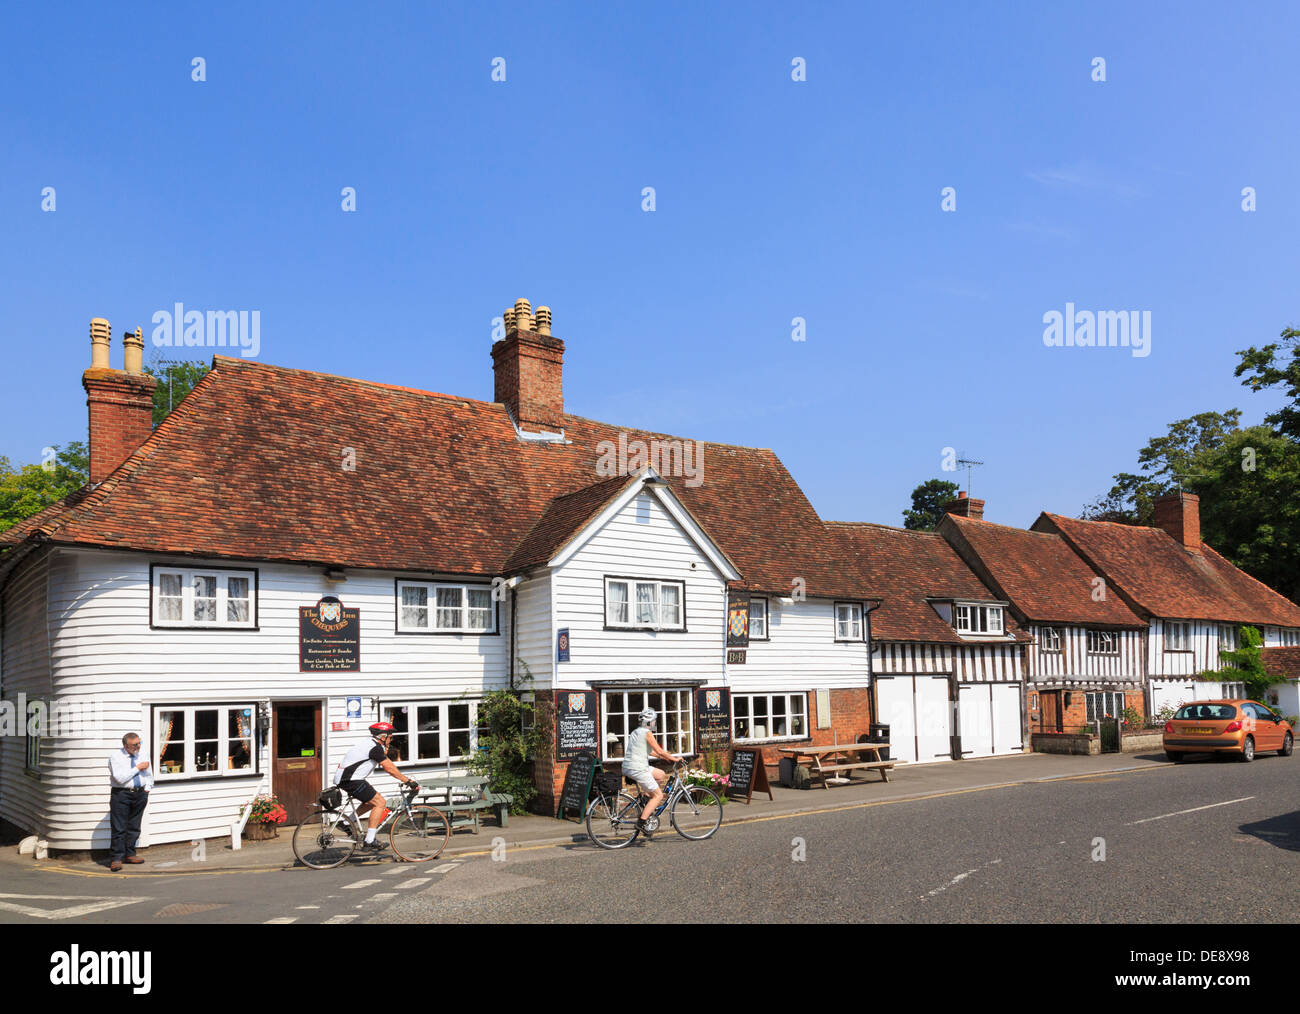 Persone ciclisti fuori del Chequers Inn vecchio 14 ° secolo locanda pub nel pittoresco villaggio inglese. The Street Smarden Kent Inghilterra Gran Bretagna Foto Stock